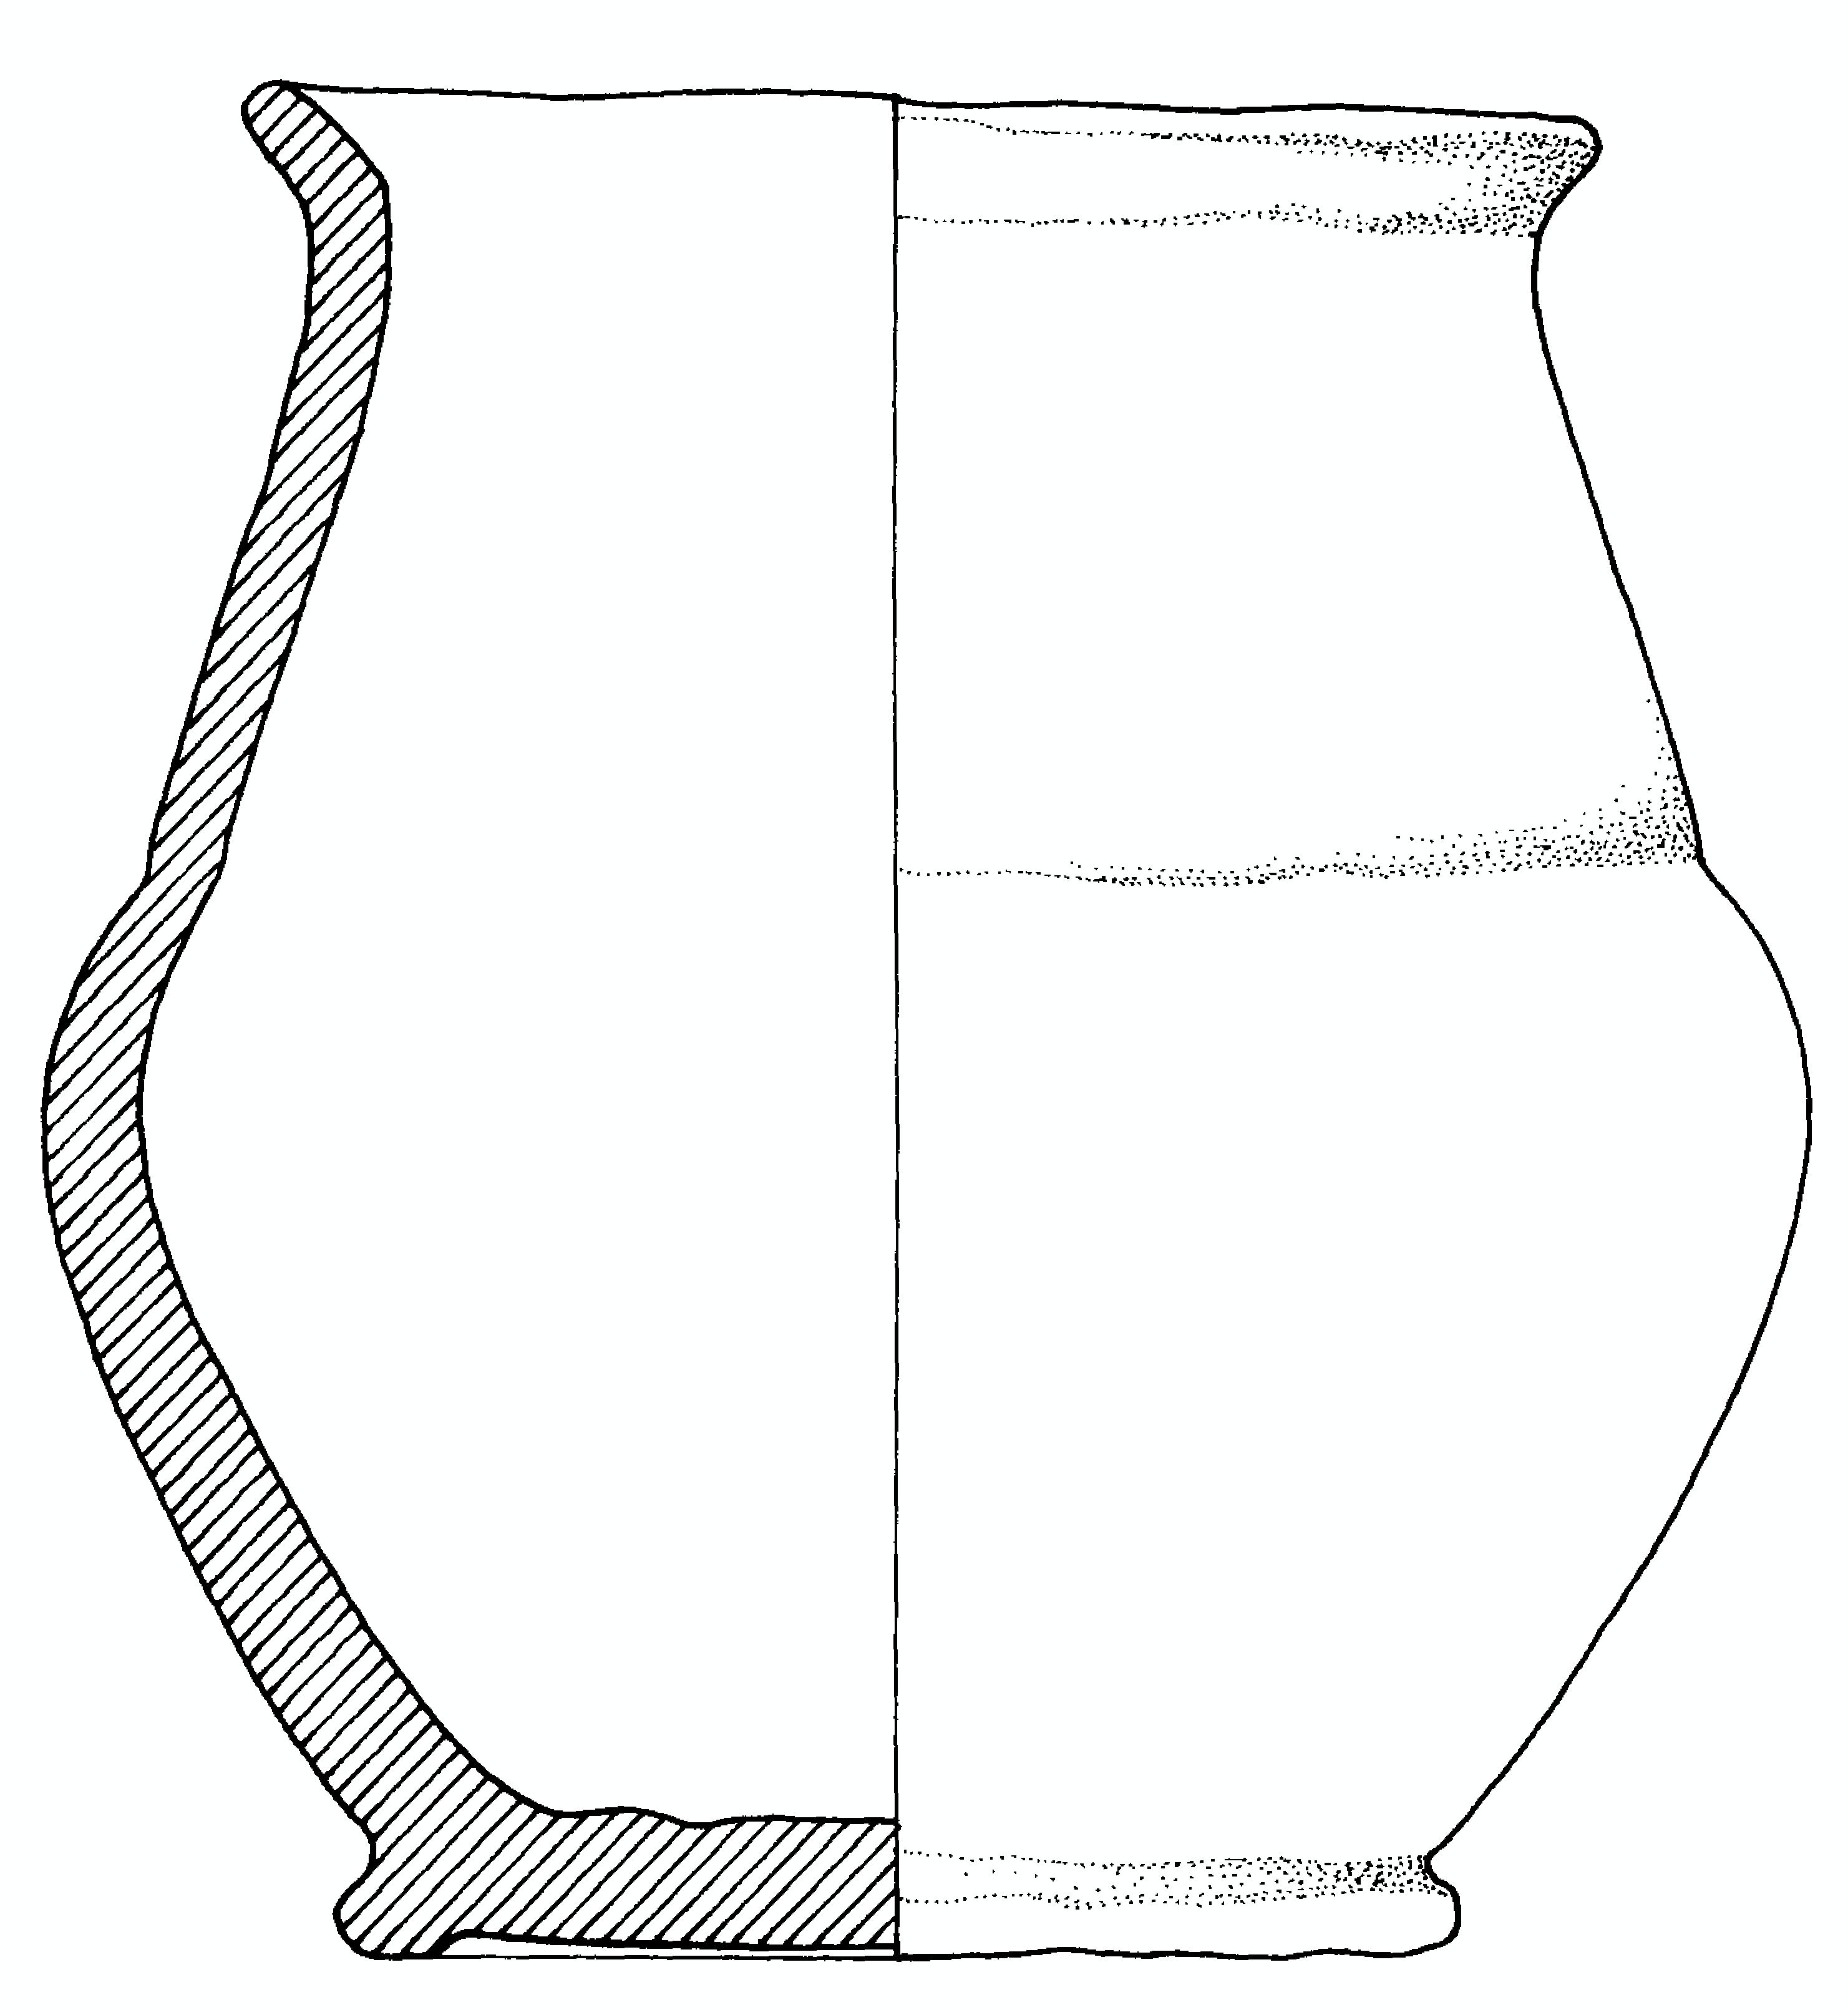 olla (fine/primo quarto IV-III a.C)